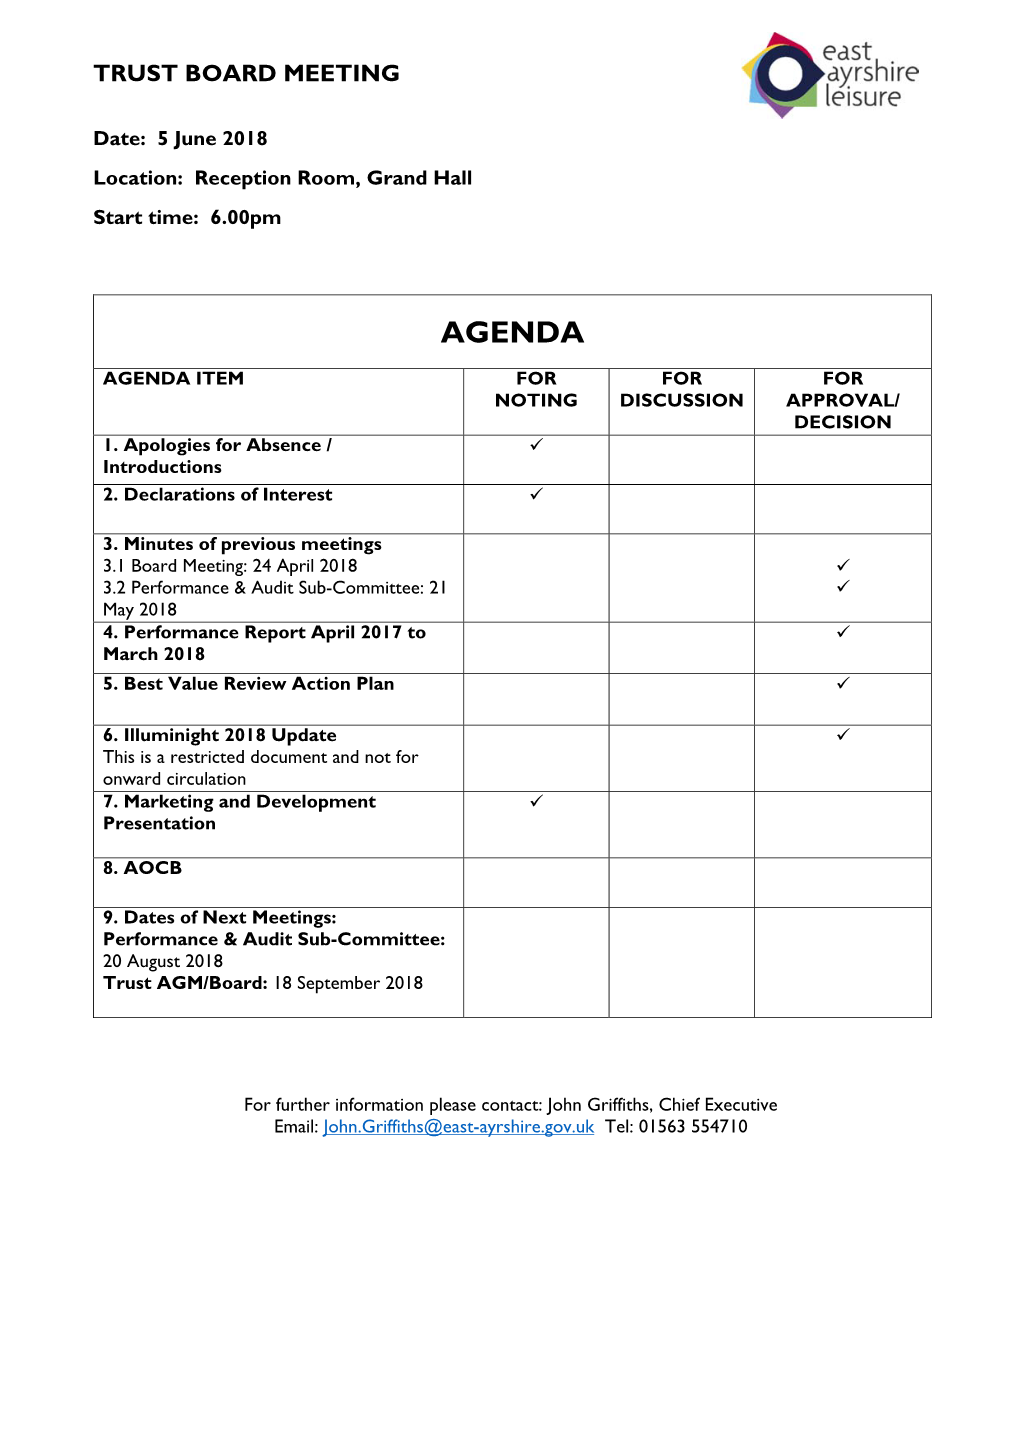 Board Agenda 5 June 2018